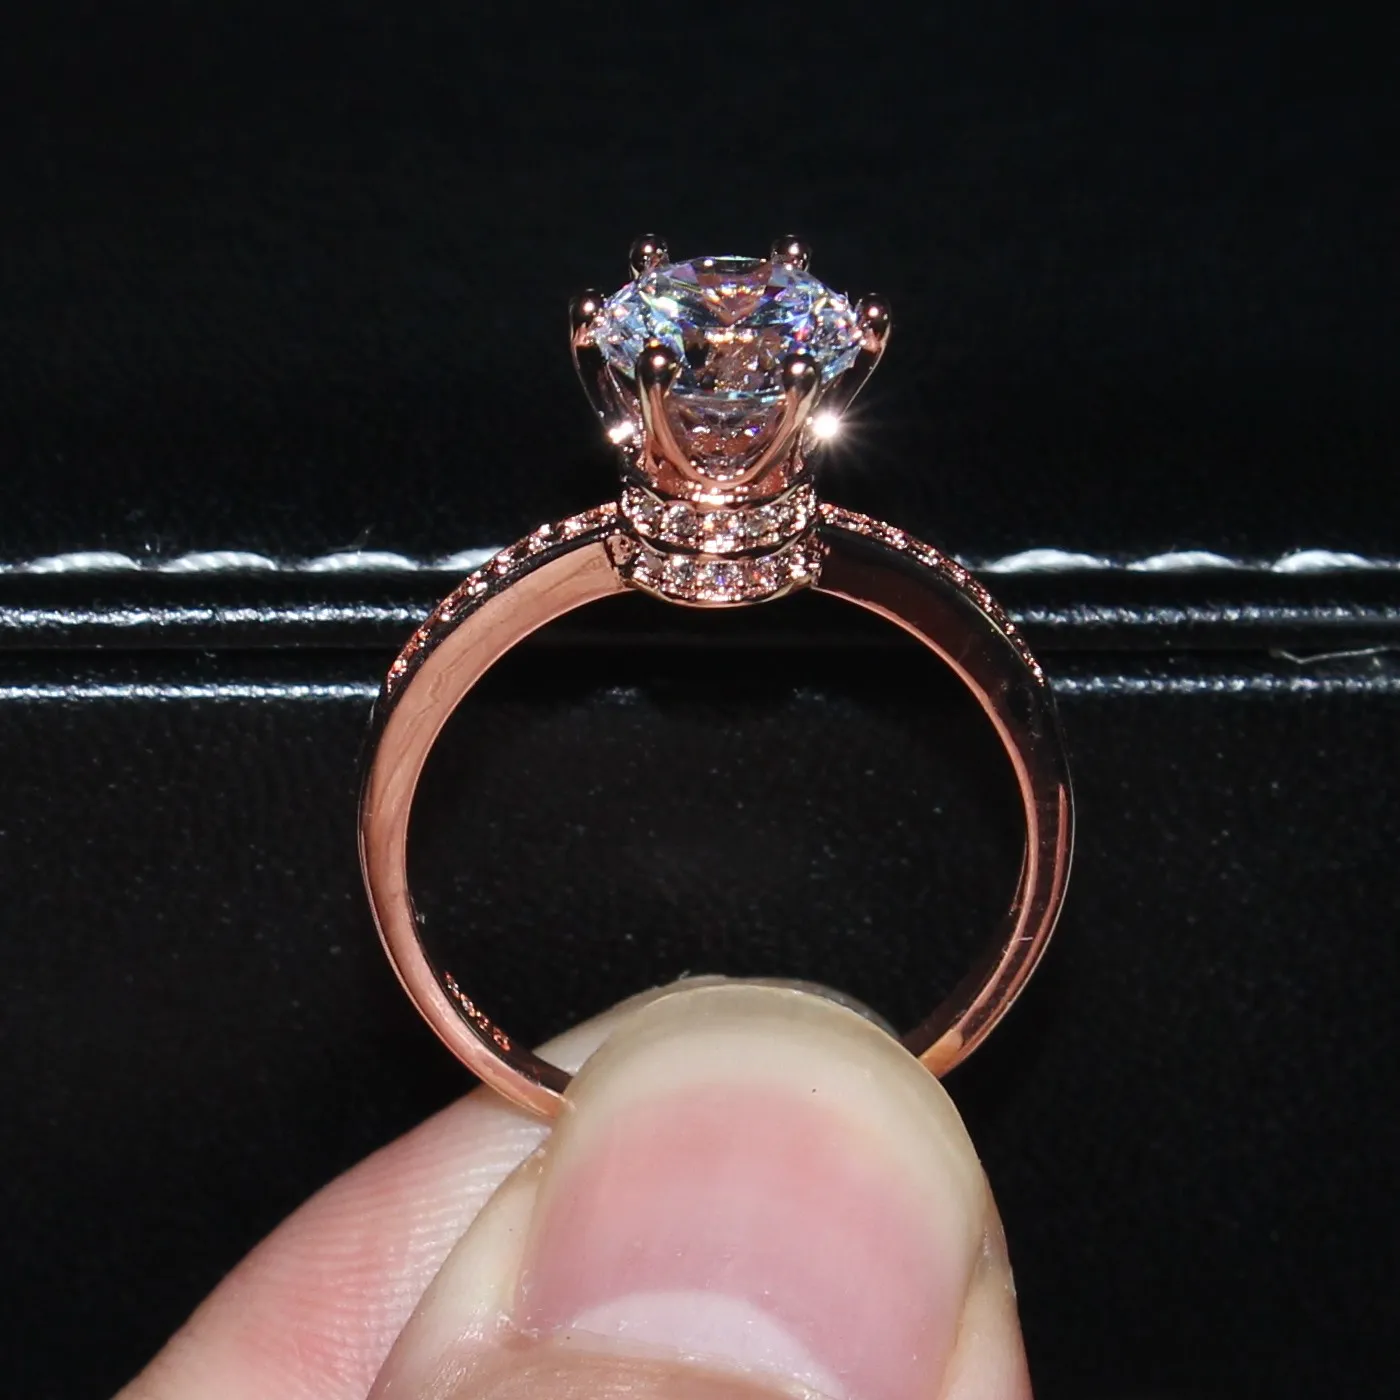 2016 새로운 디자인 패션 쥬얼리 럭셔리 여성 약혼 반지 925 스털링 실버 로즈 골드 5A 지르콘 웨딩 왕관의 보석 반지